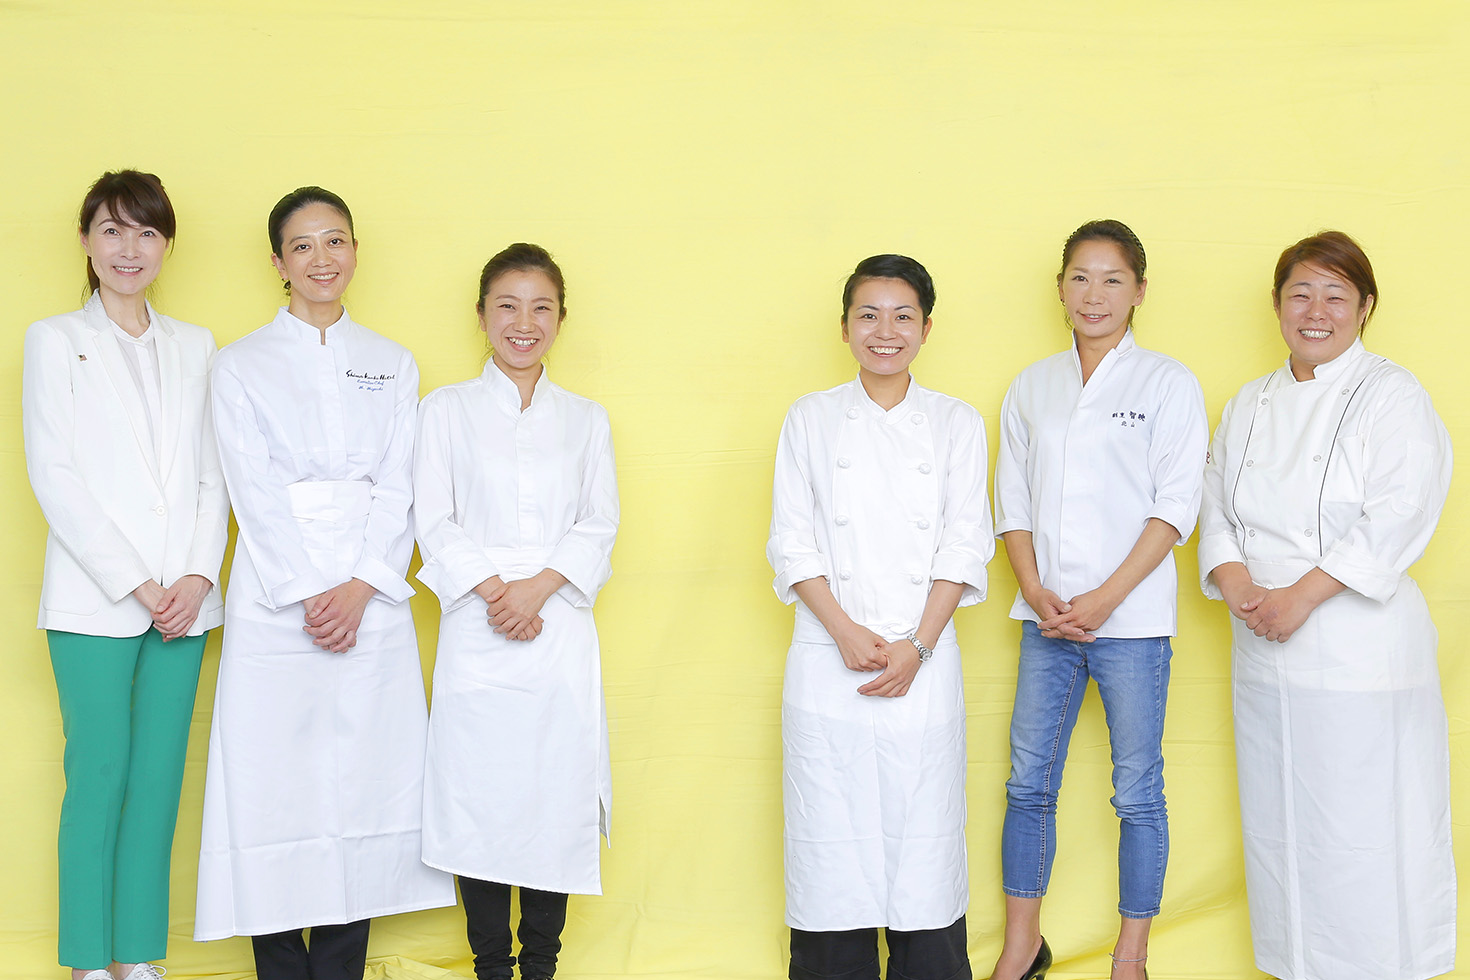 トップランナーが語る 女性料理人 の仕事と生き方 活躍のヒント ぐるなび通信